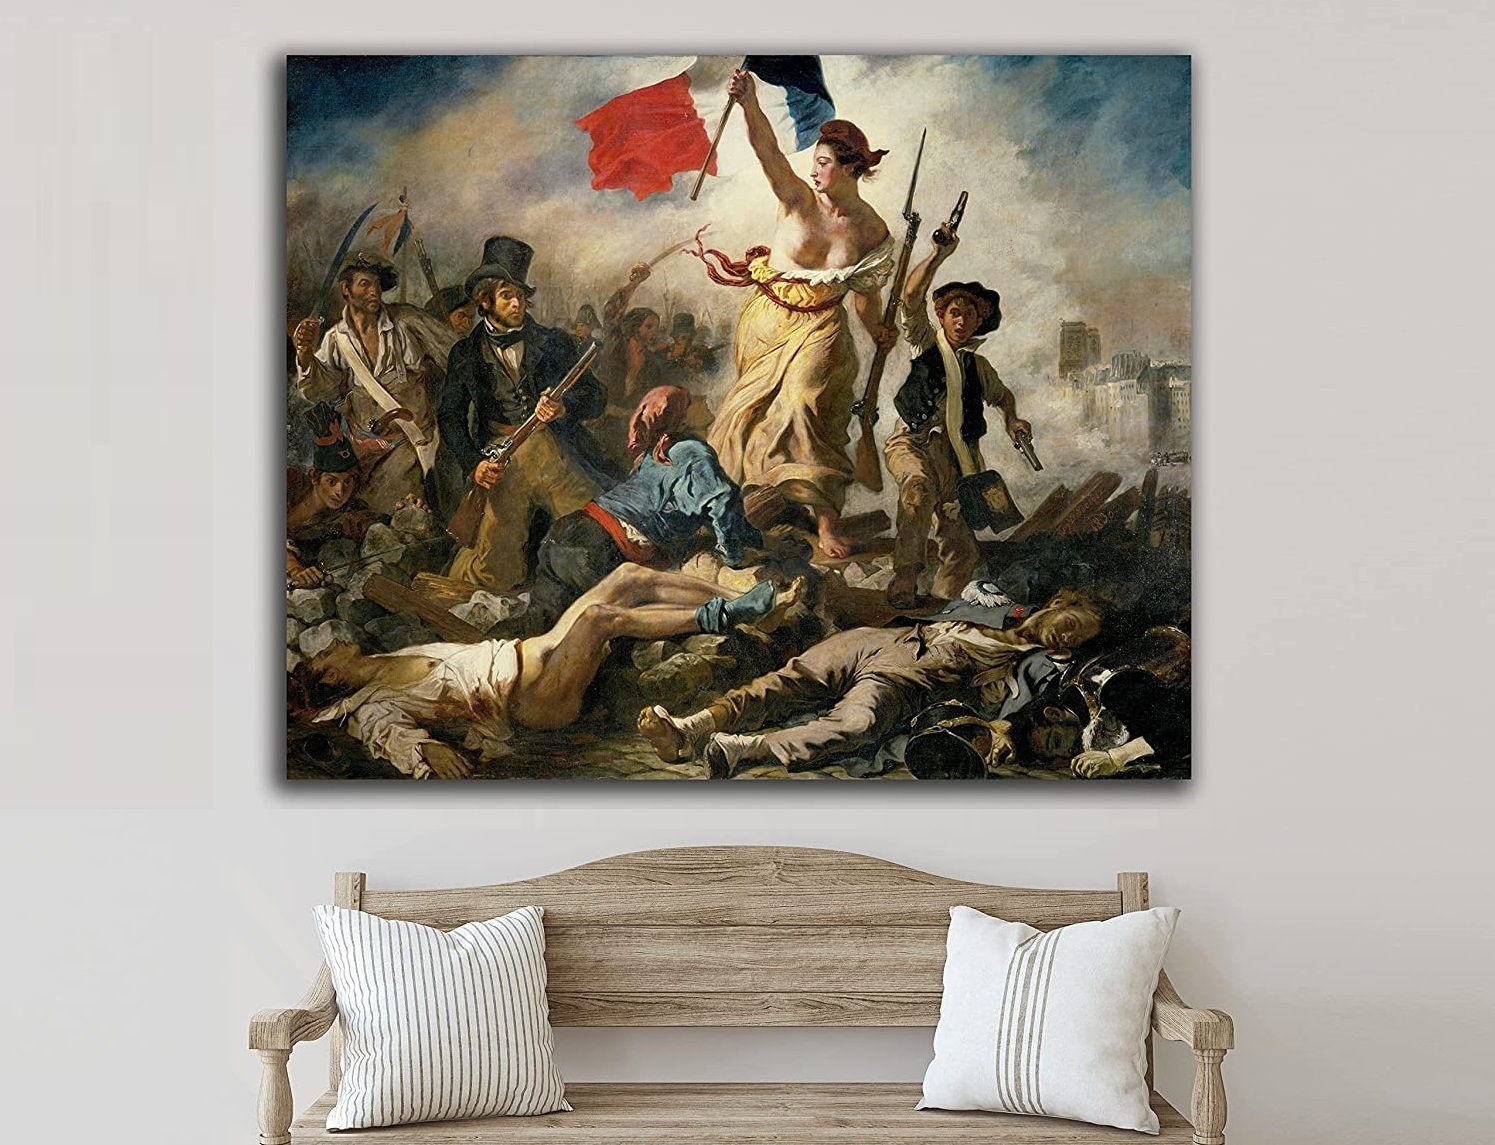 Al estilo Delacroix... Decora tu saln con los cuadros ms emblemticos del pintor francs